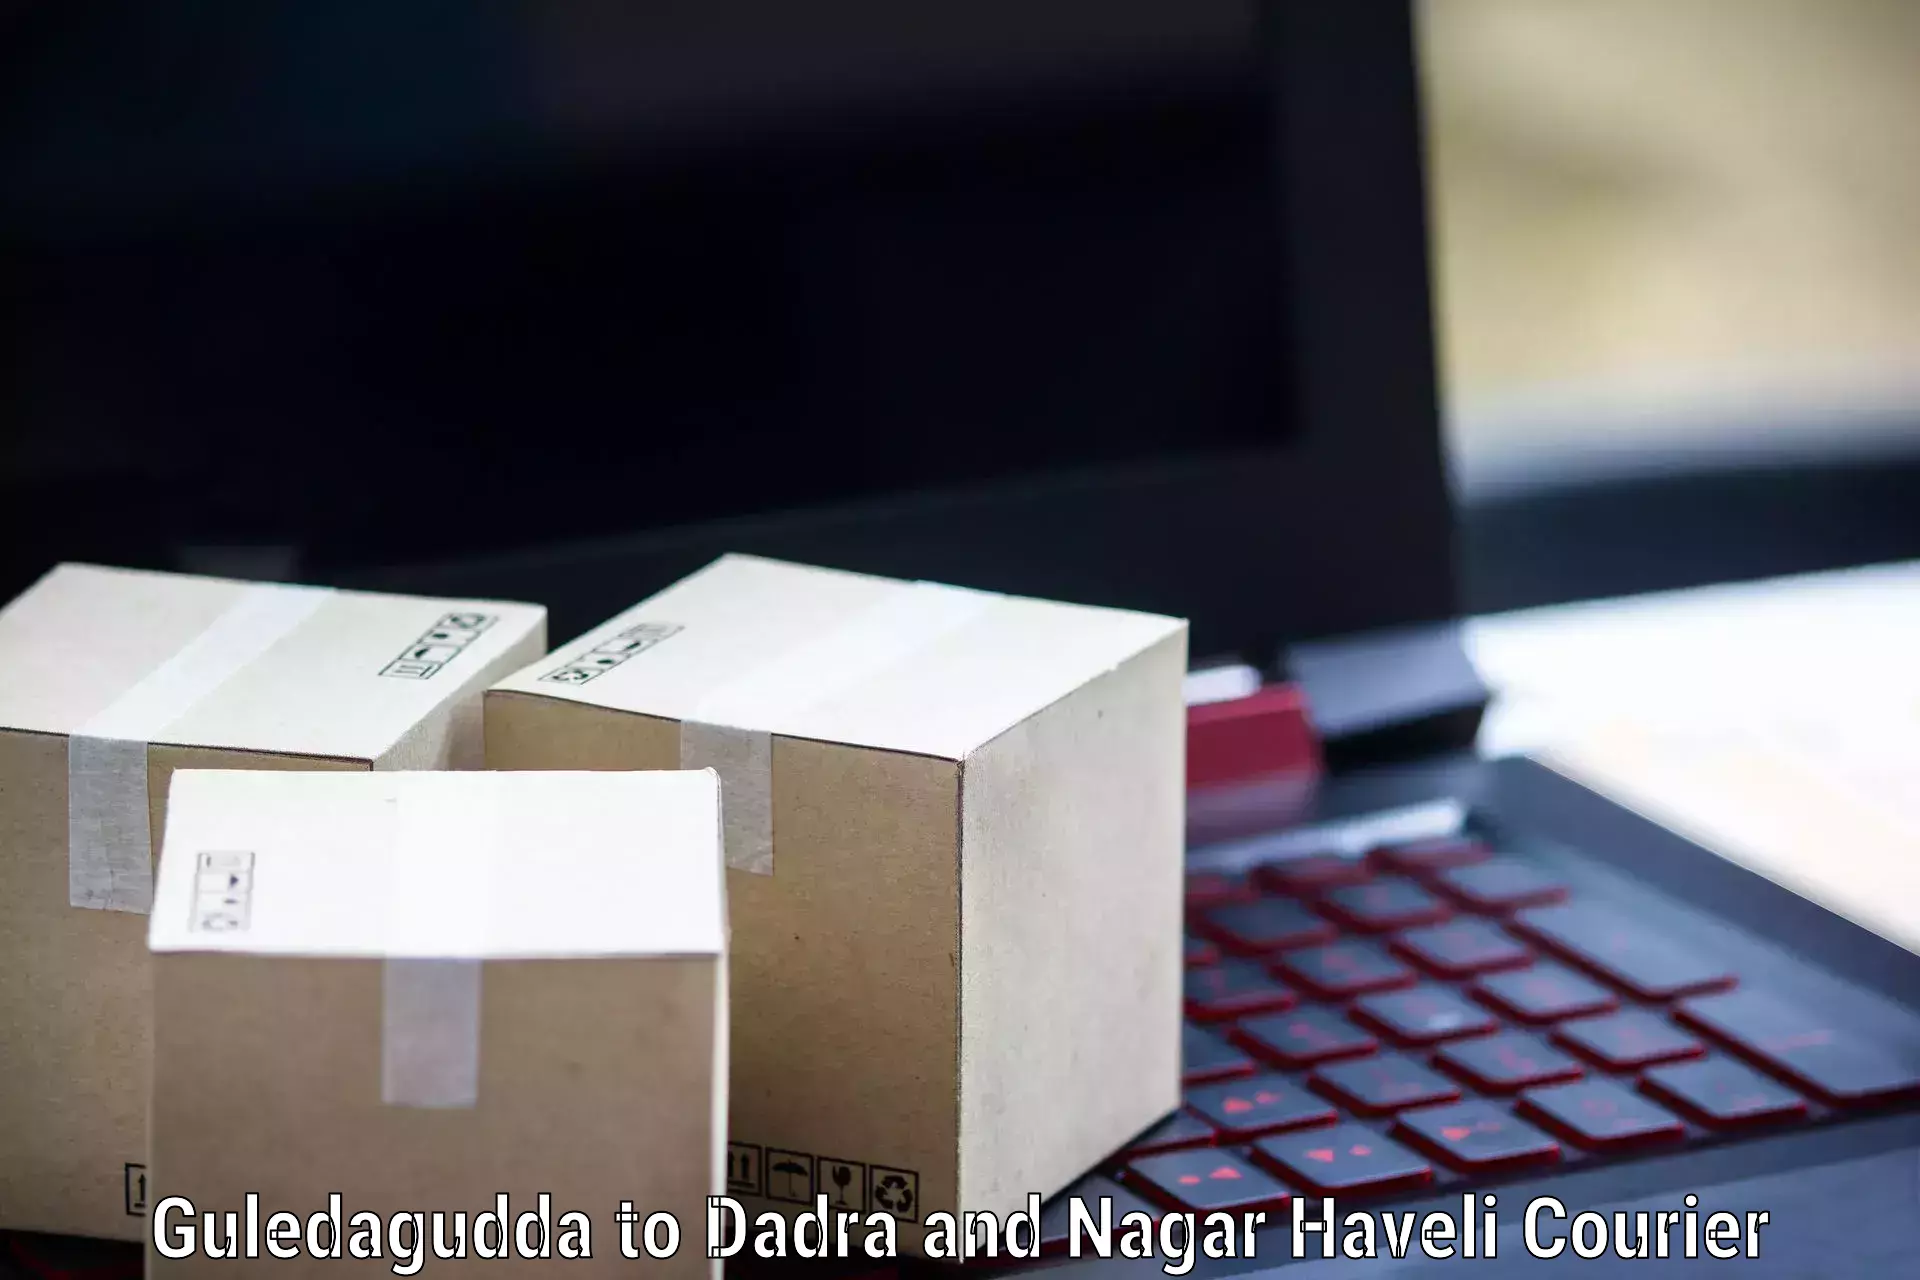 Cost-effective courier solutions Guledagudda to Silvassa